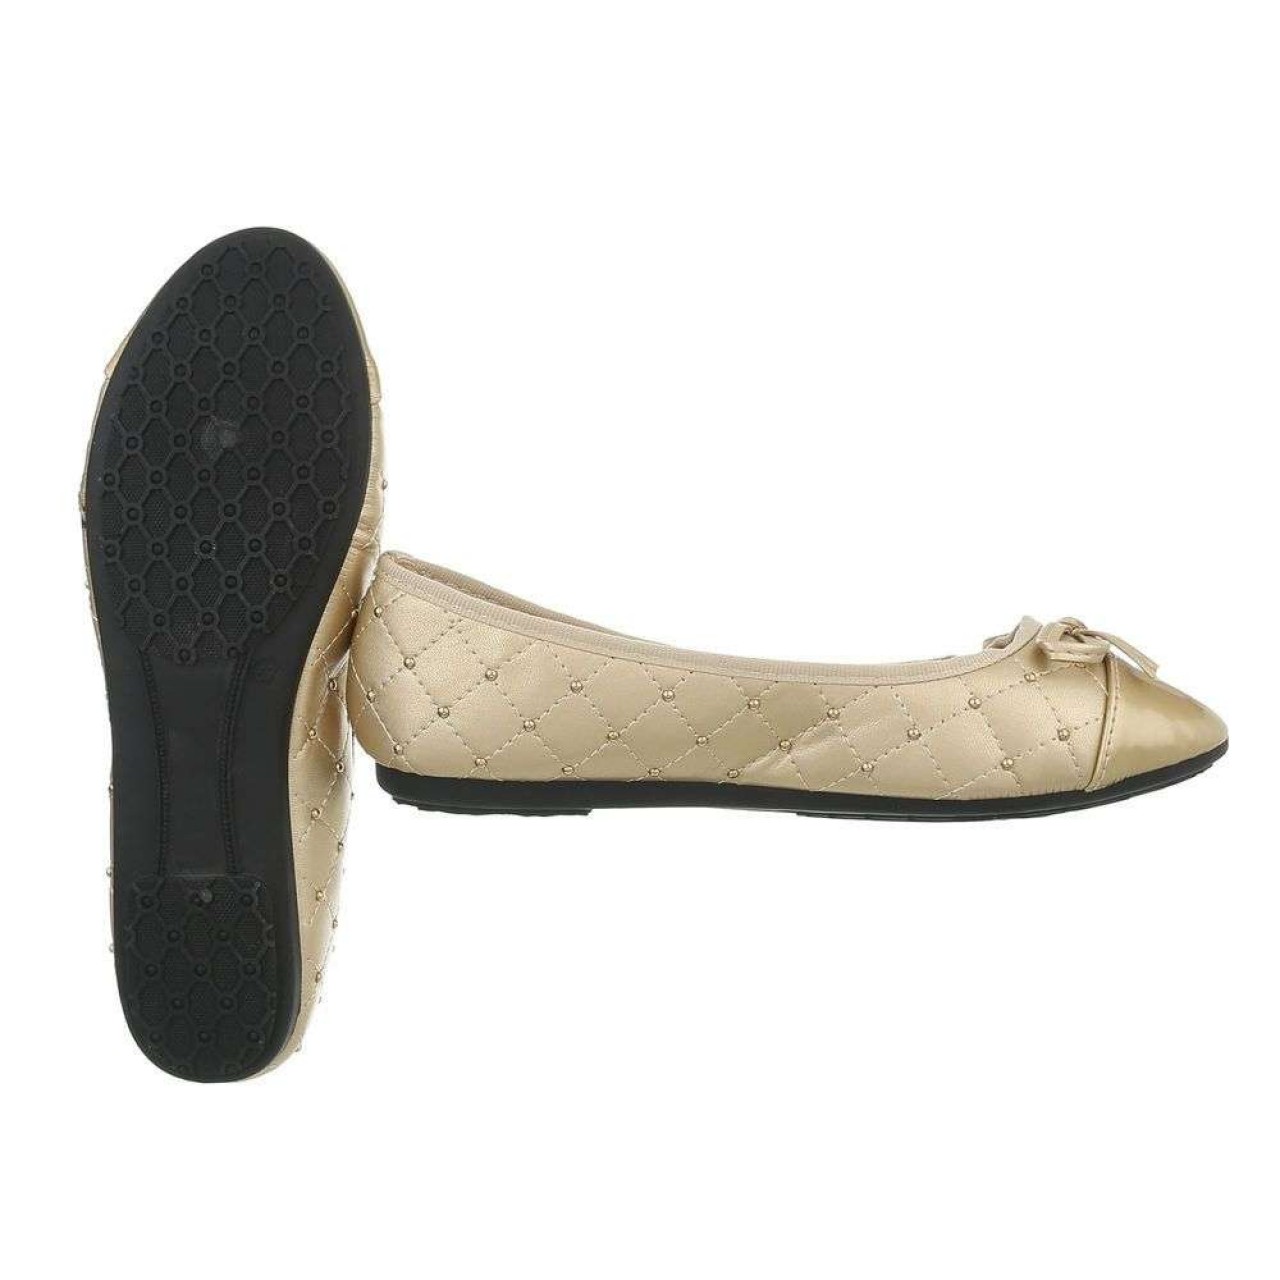 Γυναικεία Παπούτσια Μπαλαρίνα Καπιτονέ Μπεζ Και Με Χρυσές Λεπτομέρειες - 4070